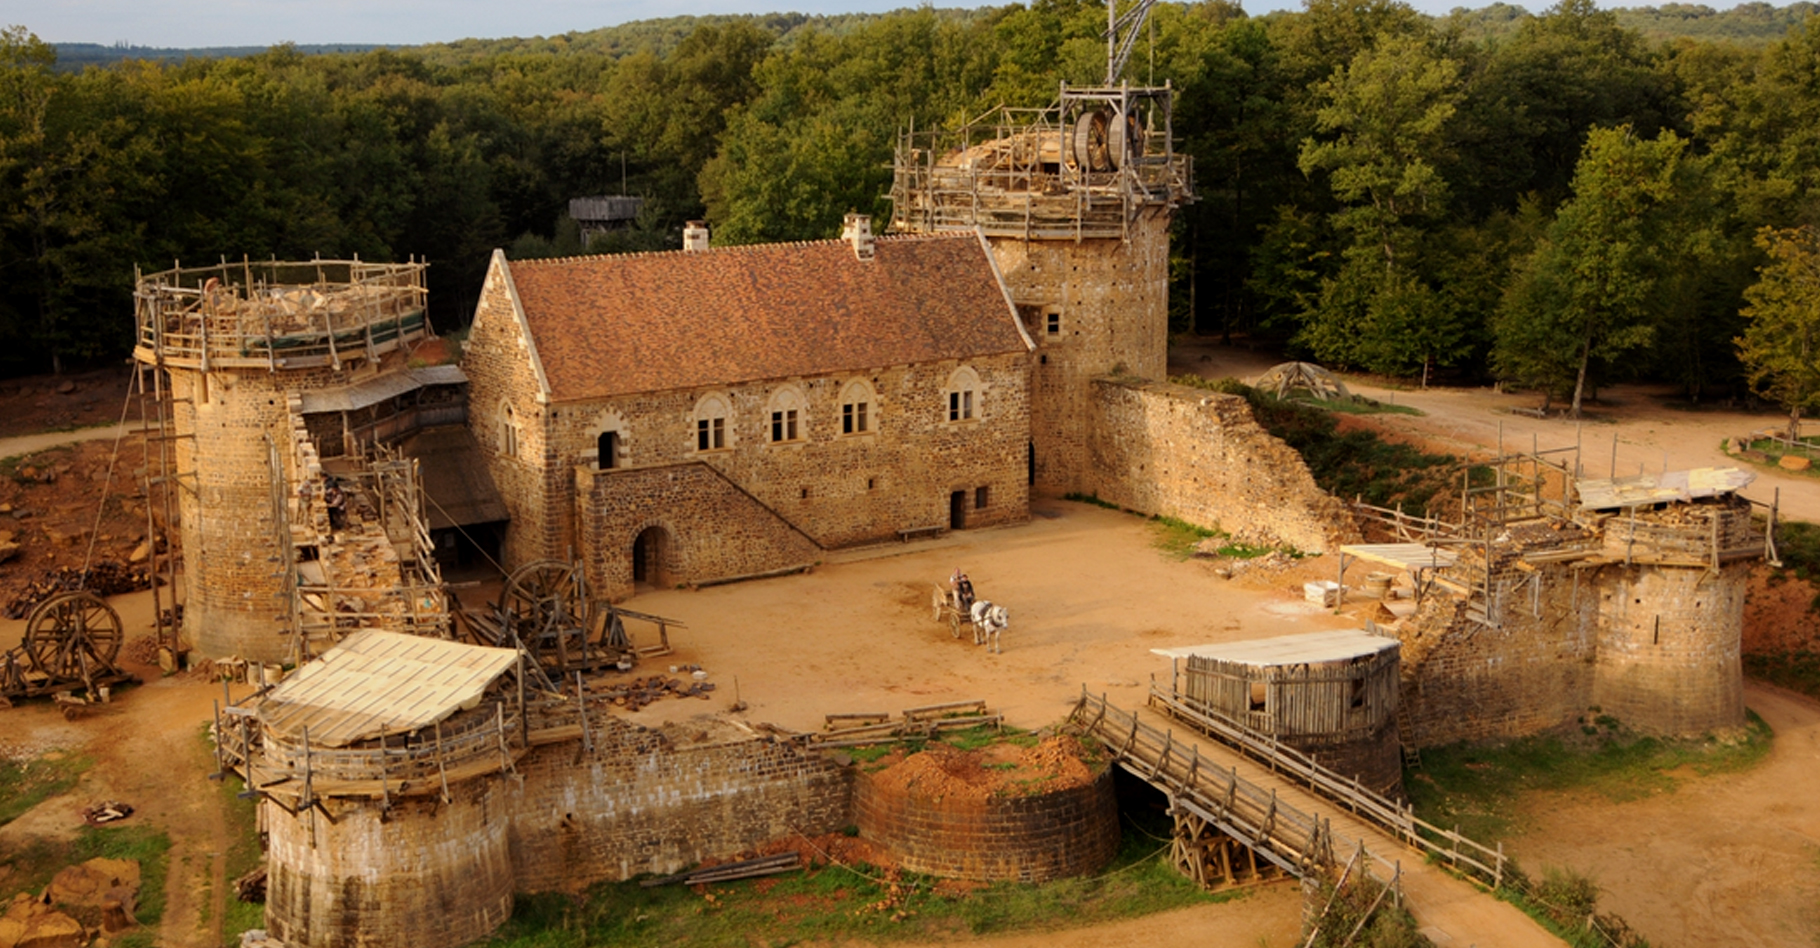 Vue du château en septembre 2015. © Guédelon, C. Guérard - Tous droits réservés